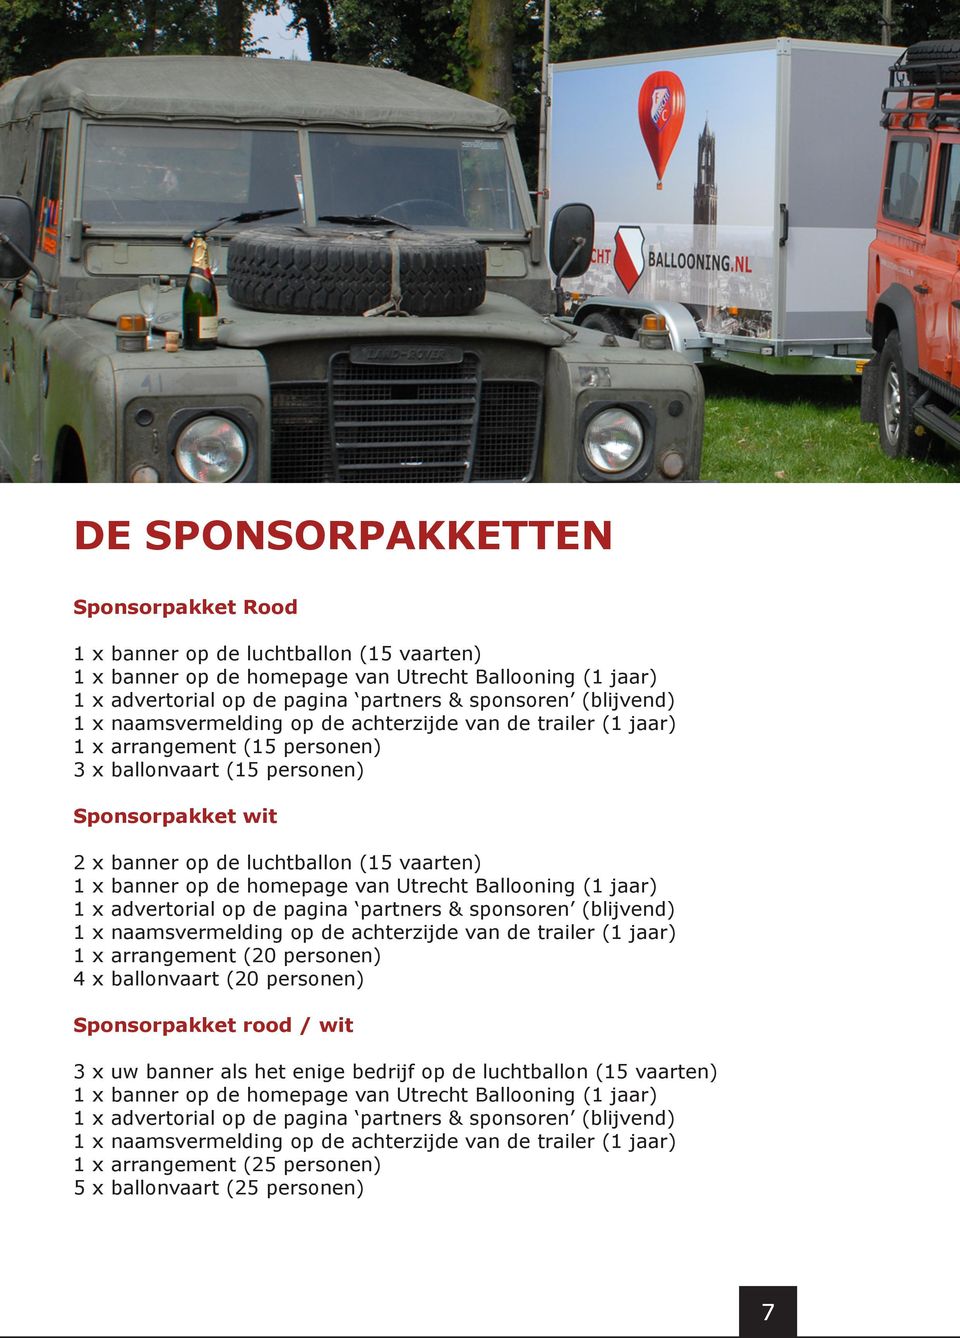 homepage van Utrecht Ballooning (1 jaar) 1 x advertorial op de pagina partners & sponsoren (blijvend) 1 x naamsvermelding op de achterzijde van de trailer (1 jaar) 1 x arrangement (20 personen) 4 x